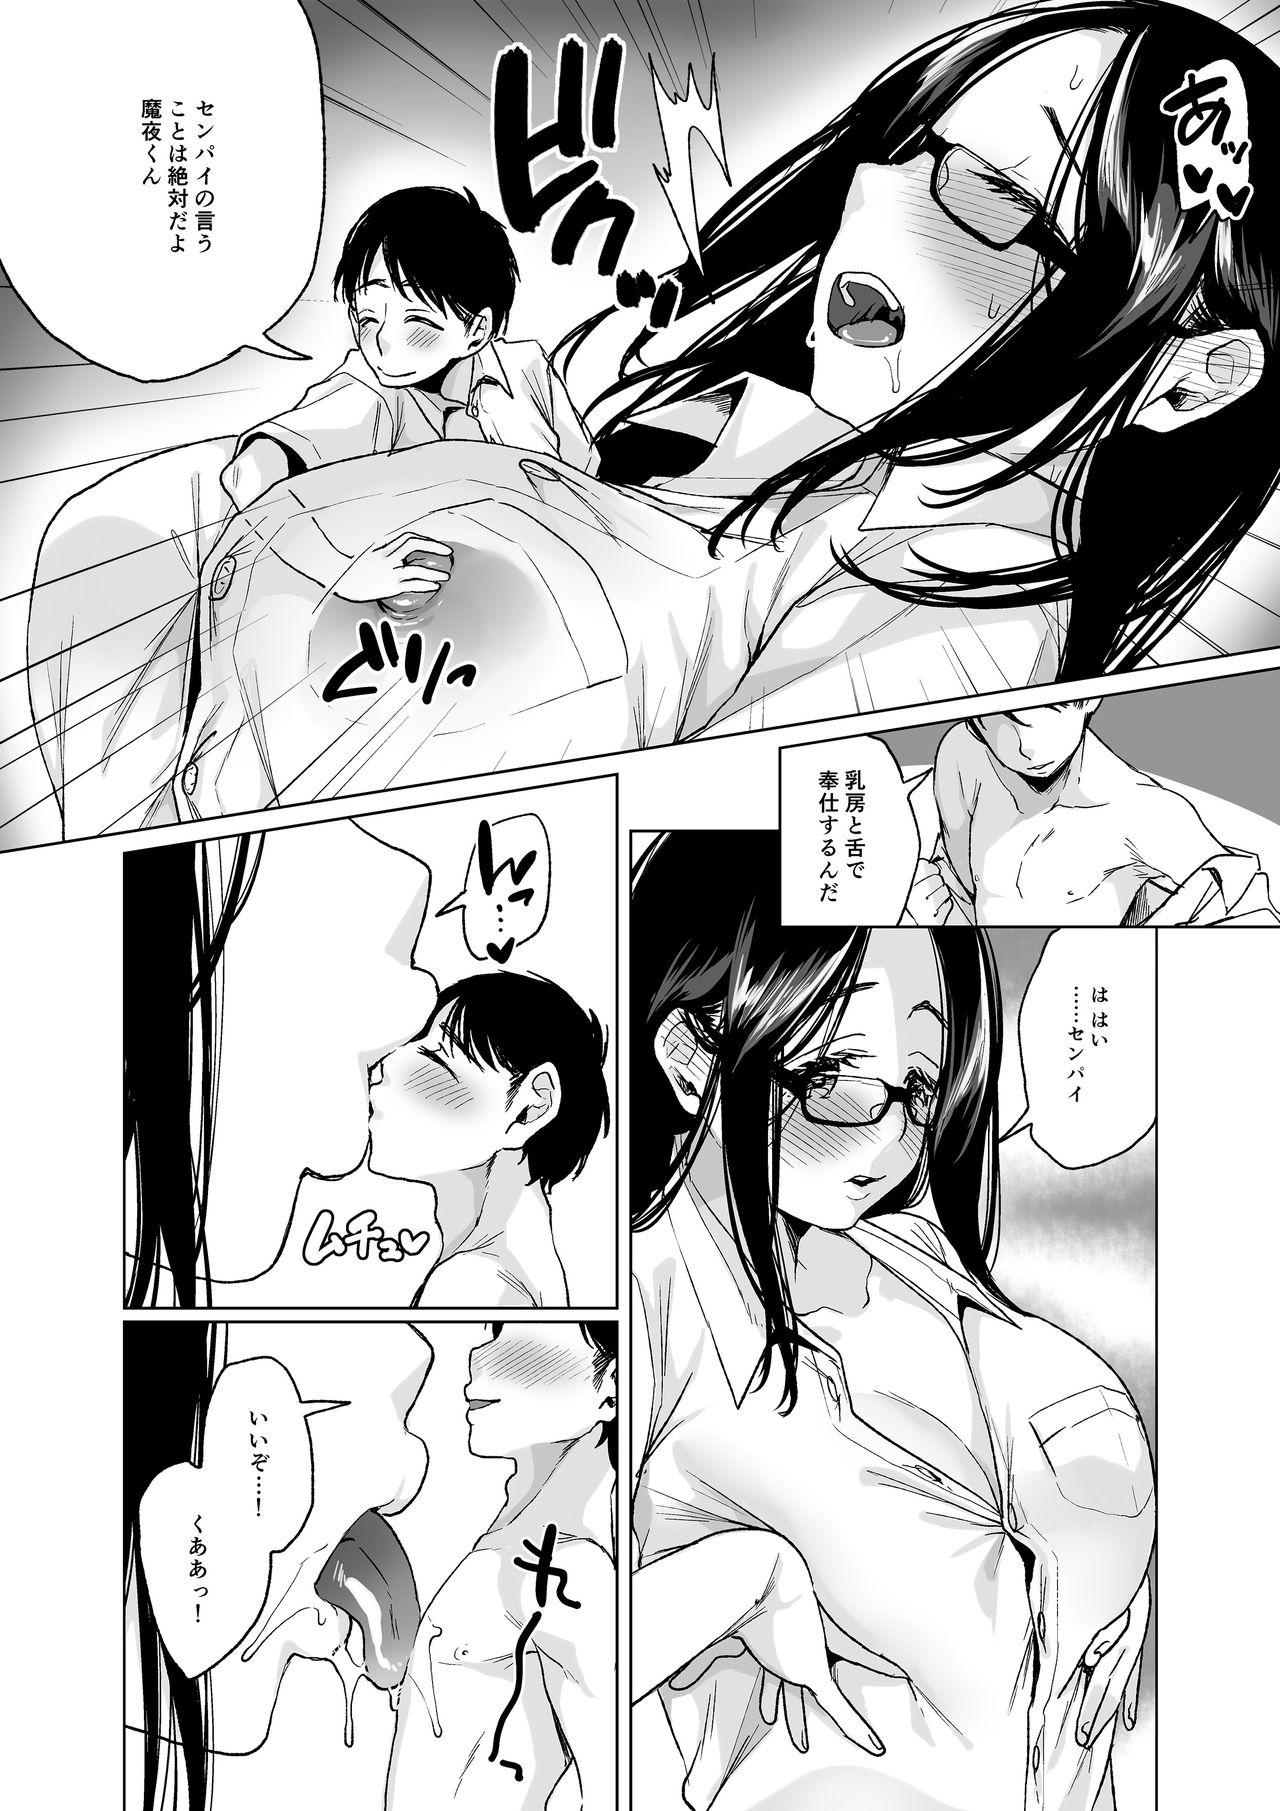 Big Tits MM Vol. 50 Shumatsu wa Oppai ni Yosete♥ Letsdoeit - Page 7